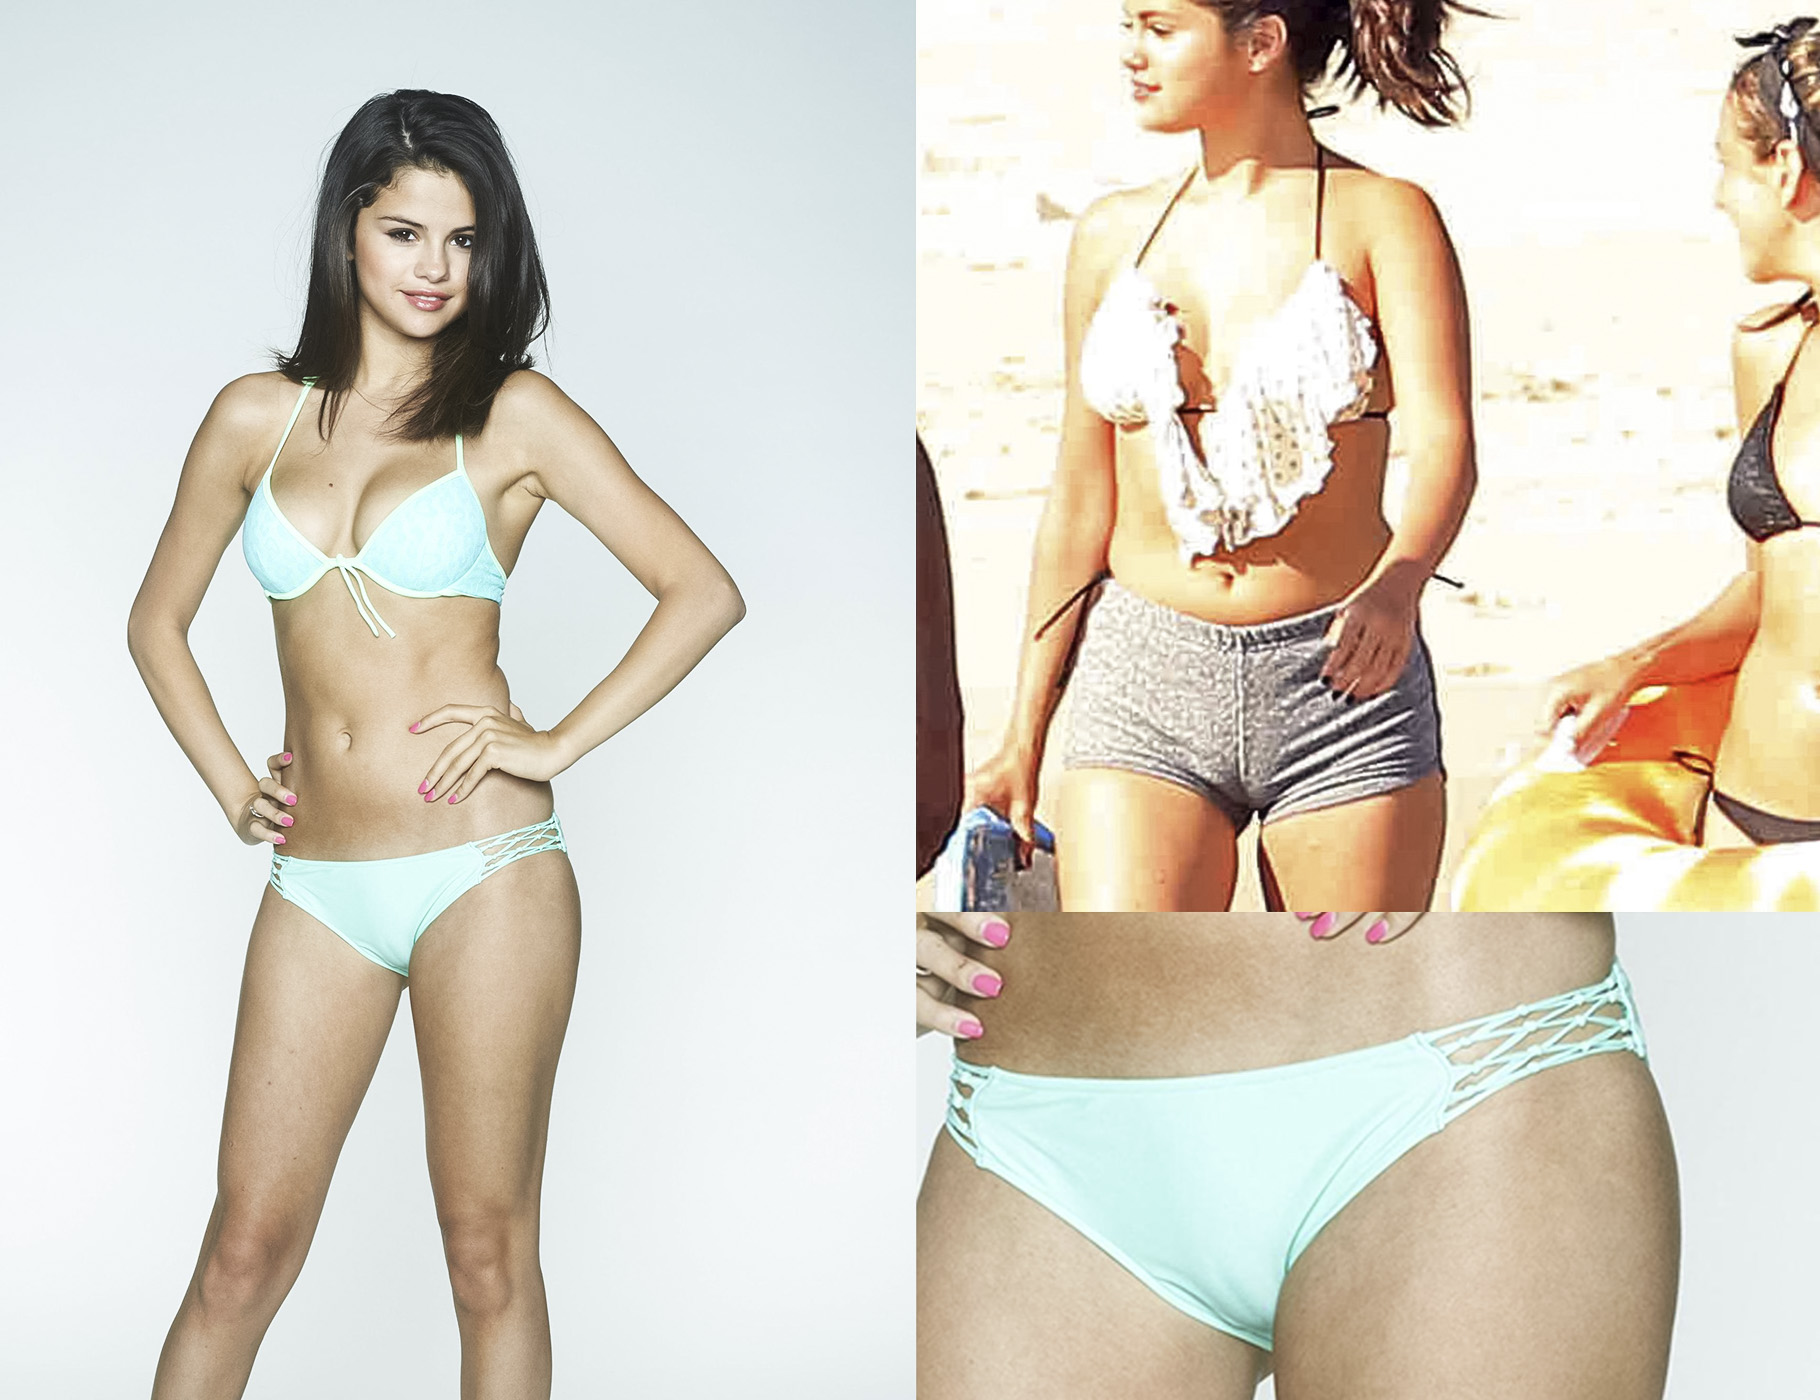 Selena Gomez camel toe - Selena Gomez cameltoe - Selena Gomez...